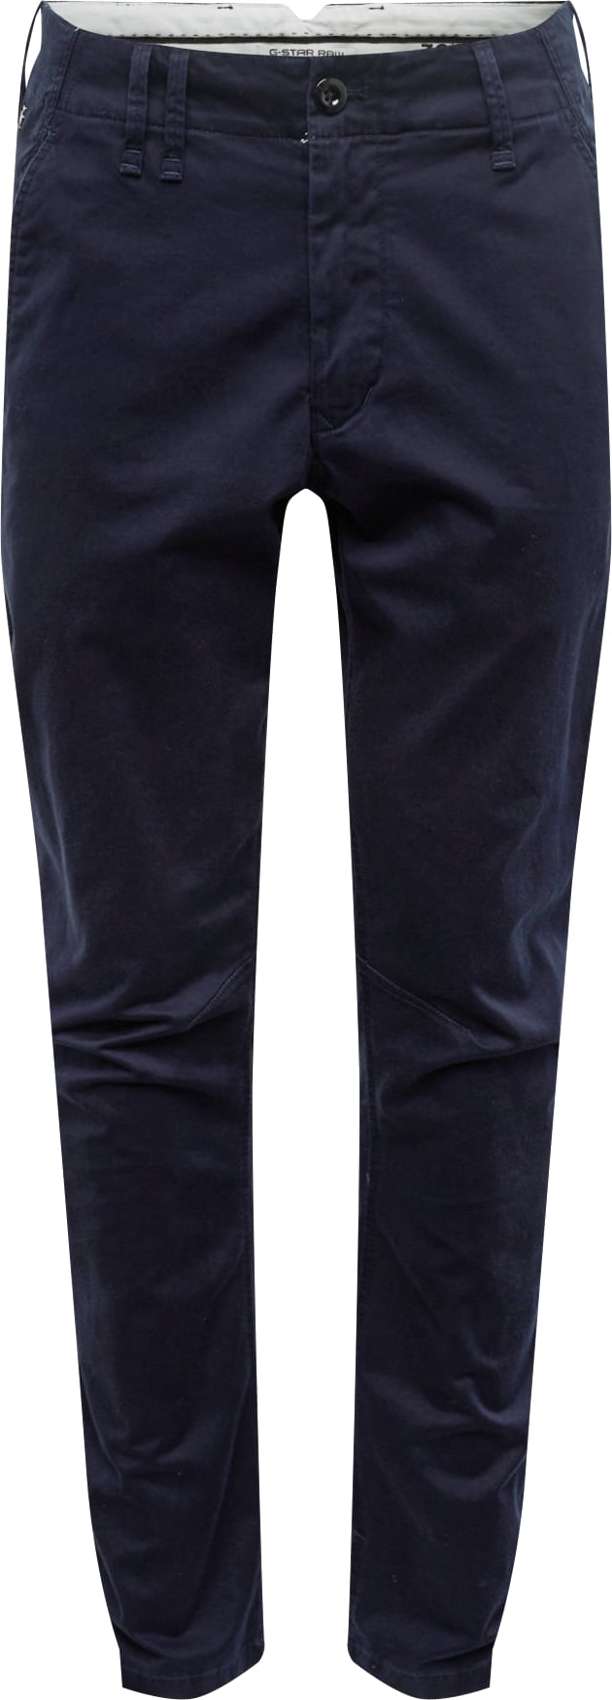 G-Star RAW Chino kalhoty 'Vetar slim' tmavě modrá